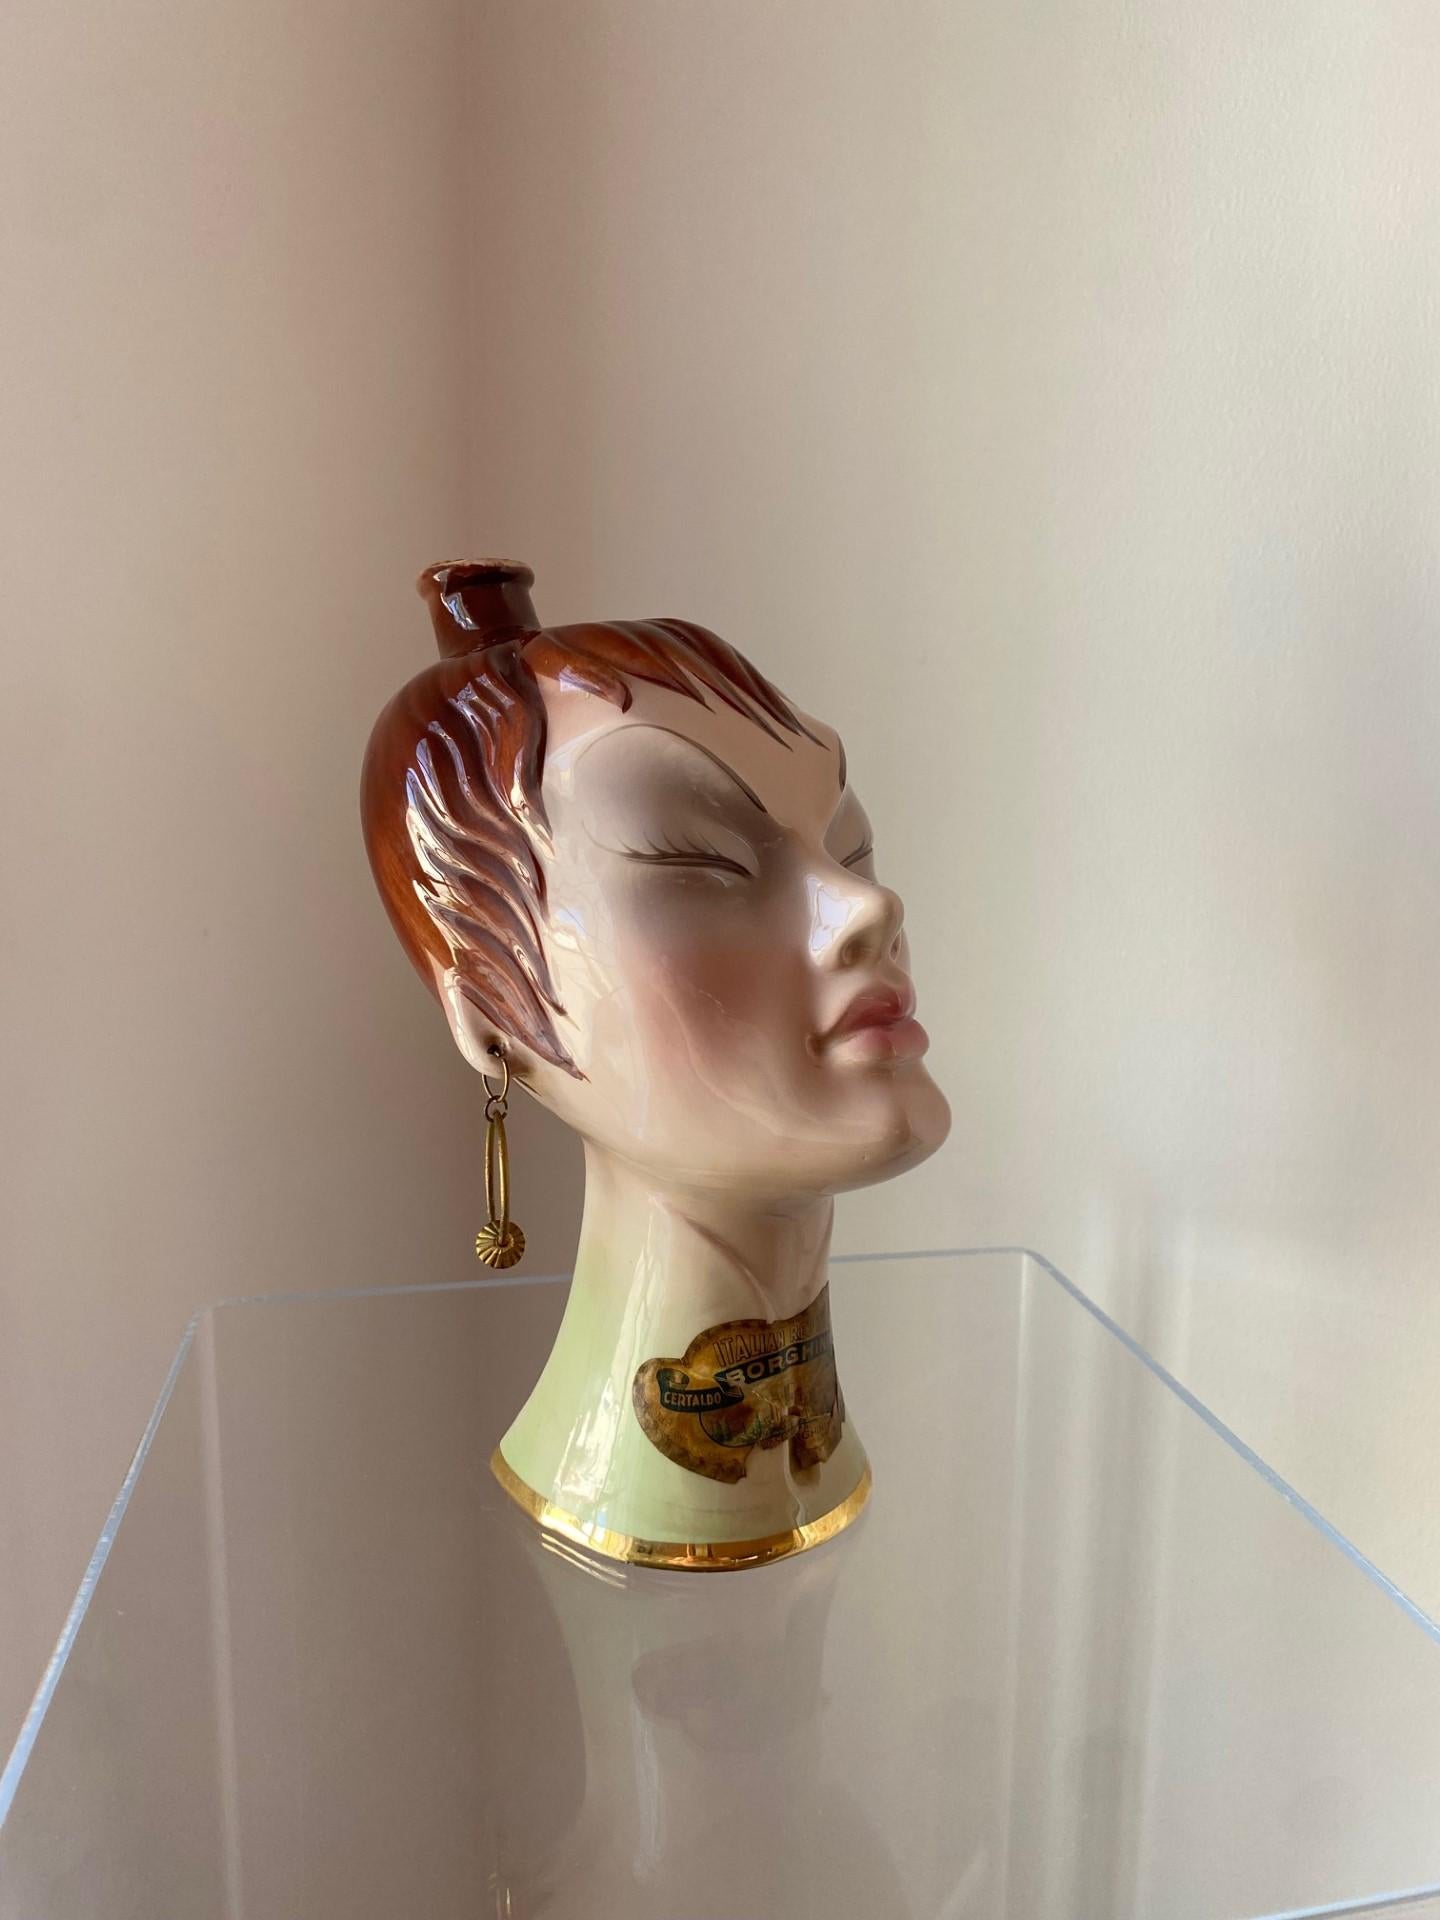 Vintage, céramique et rare carafe sculpturale en forme de buste de femme.  Cette belle pièce présente des détails de chinoiserie et est délicieusement finie.  La pièce présente de belles finitions stylistiques propres aux années 1950 (buste de style